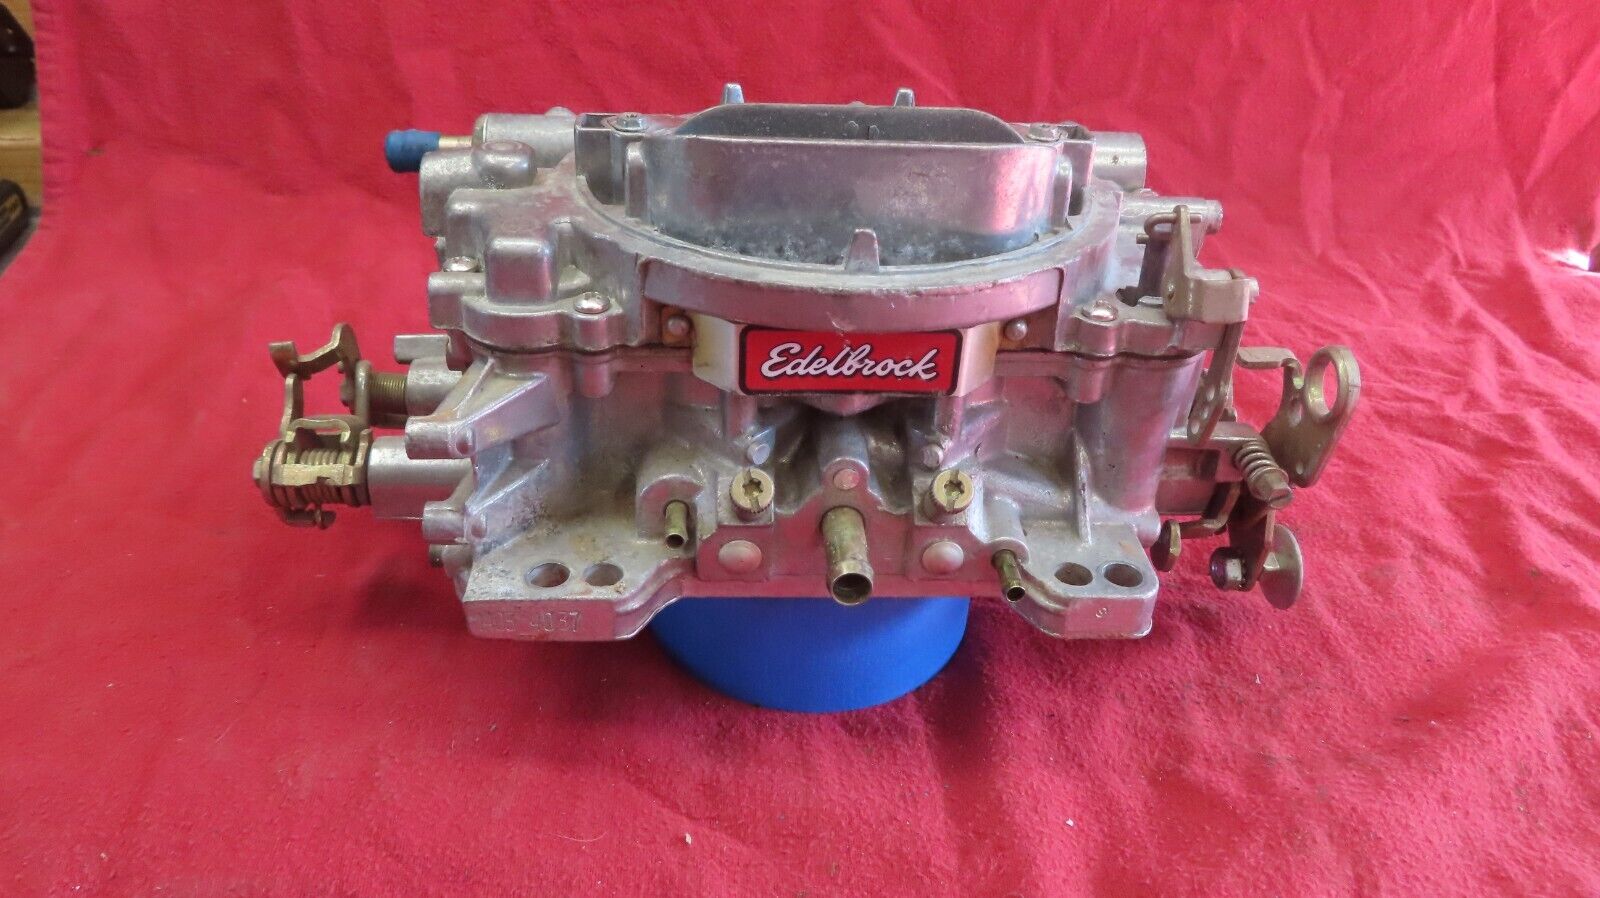 Edelbrock Performer Series 1405 Carburetor 600 CFM Manual Choke 4 Barrel Carb